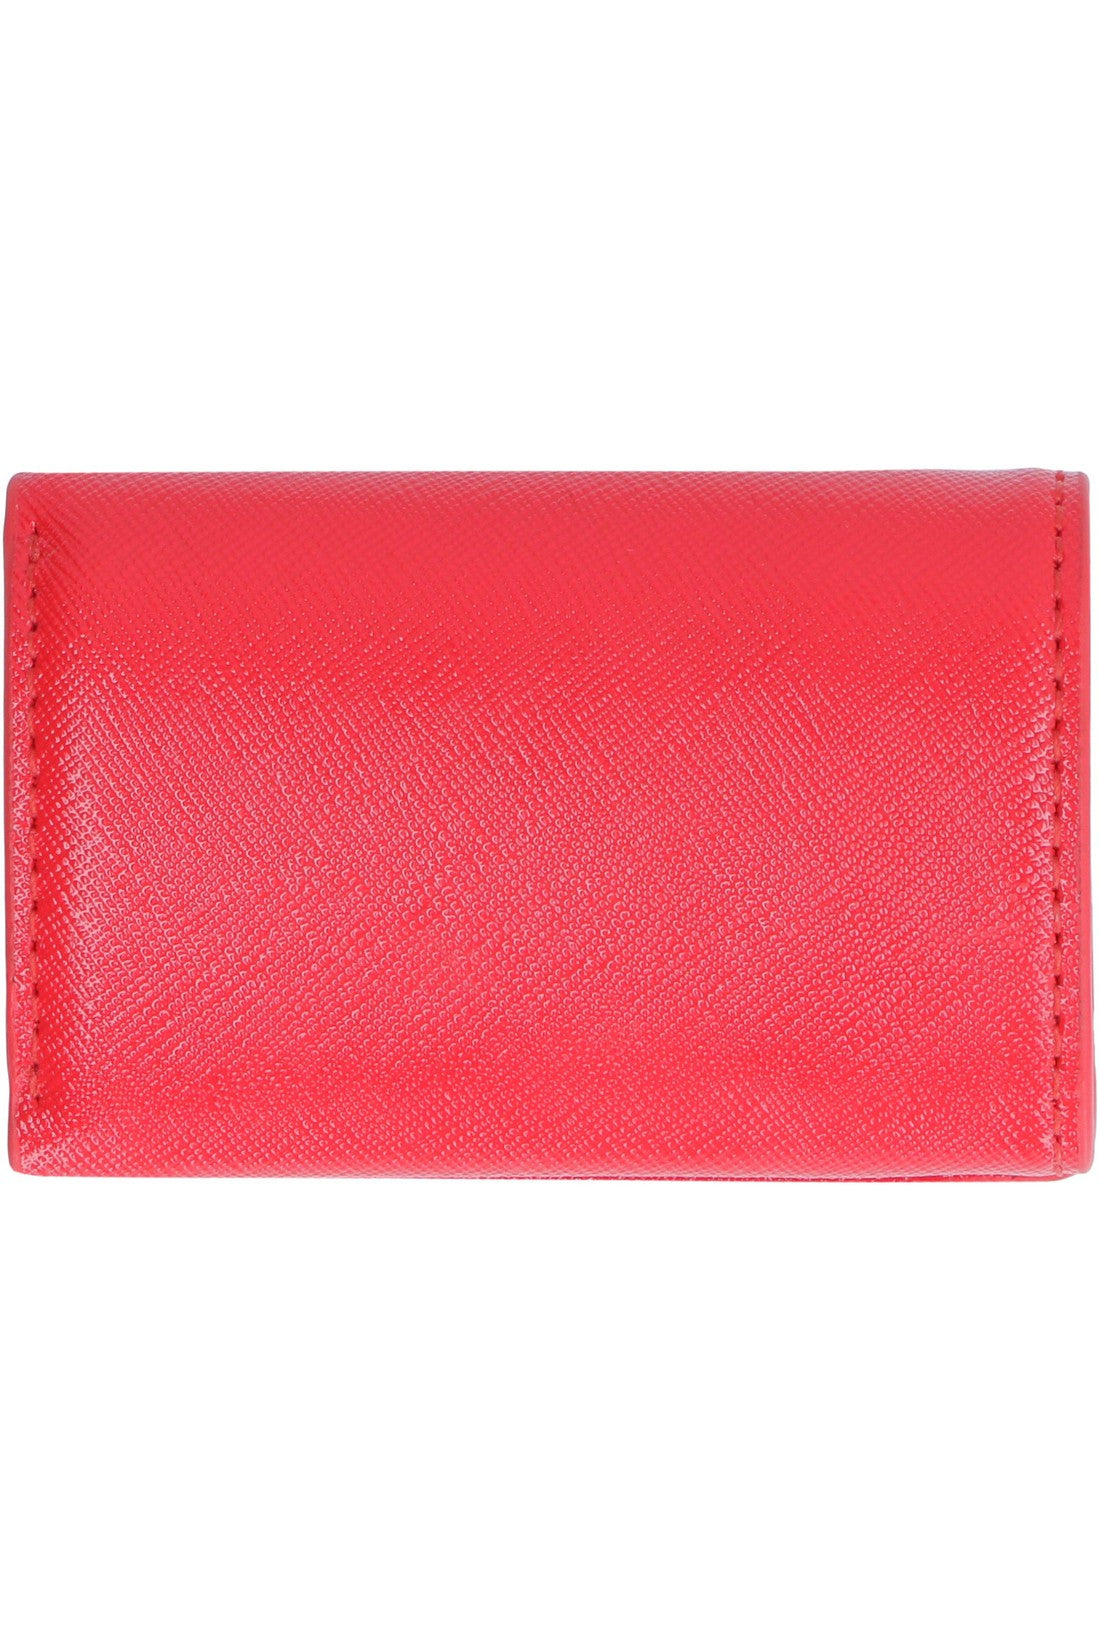 Marc Jacobs-OUTLET-SALE-Snapshot mini leather wallet-ARCHIVIST